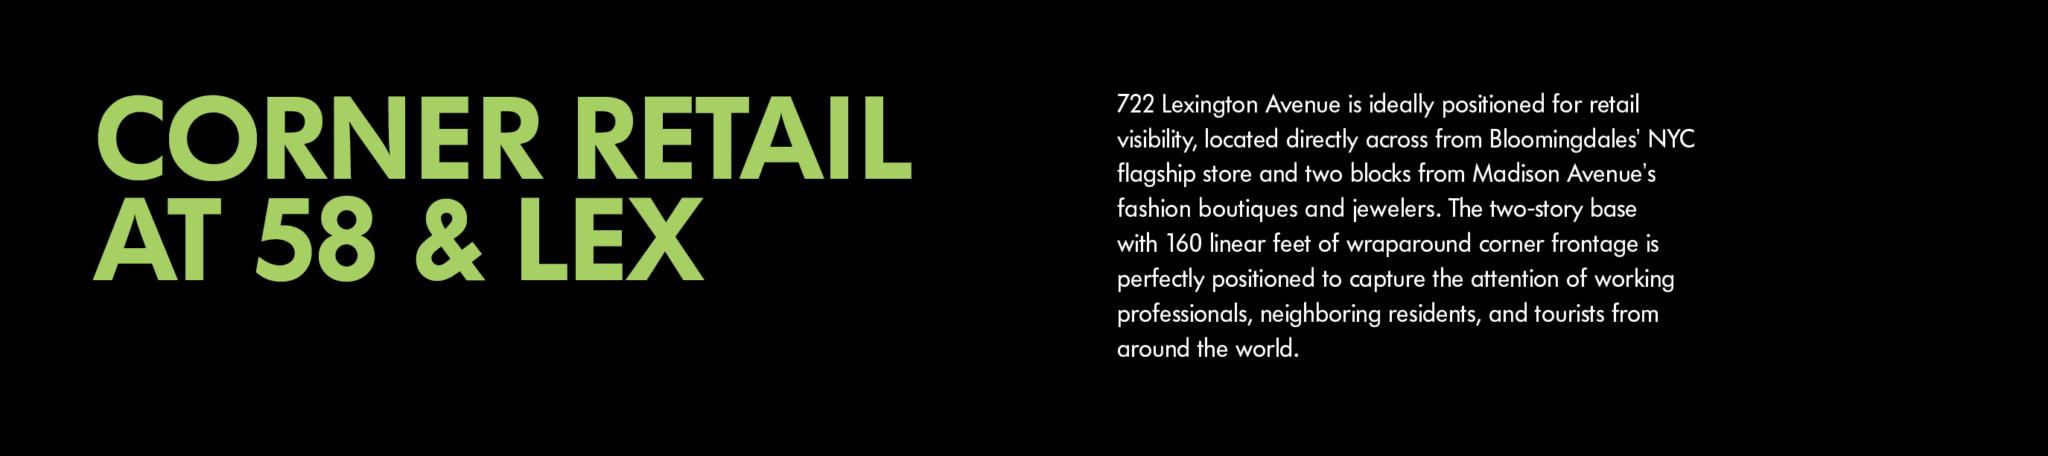 Corner Retail Description of 722 Lexington